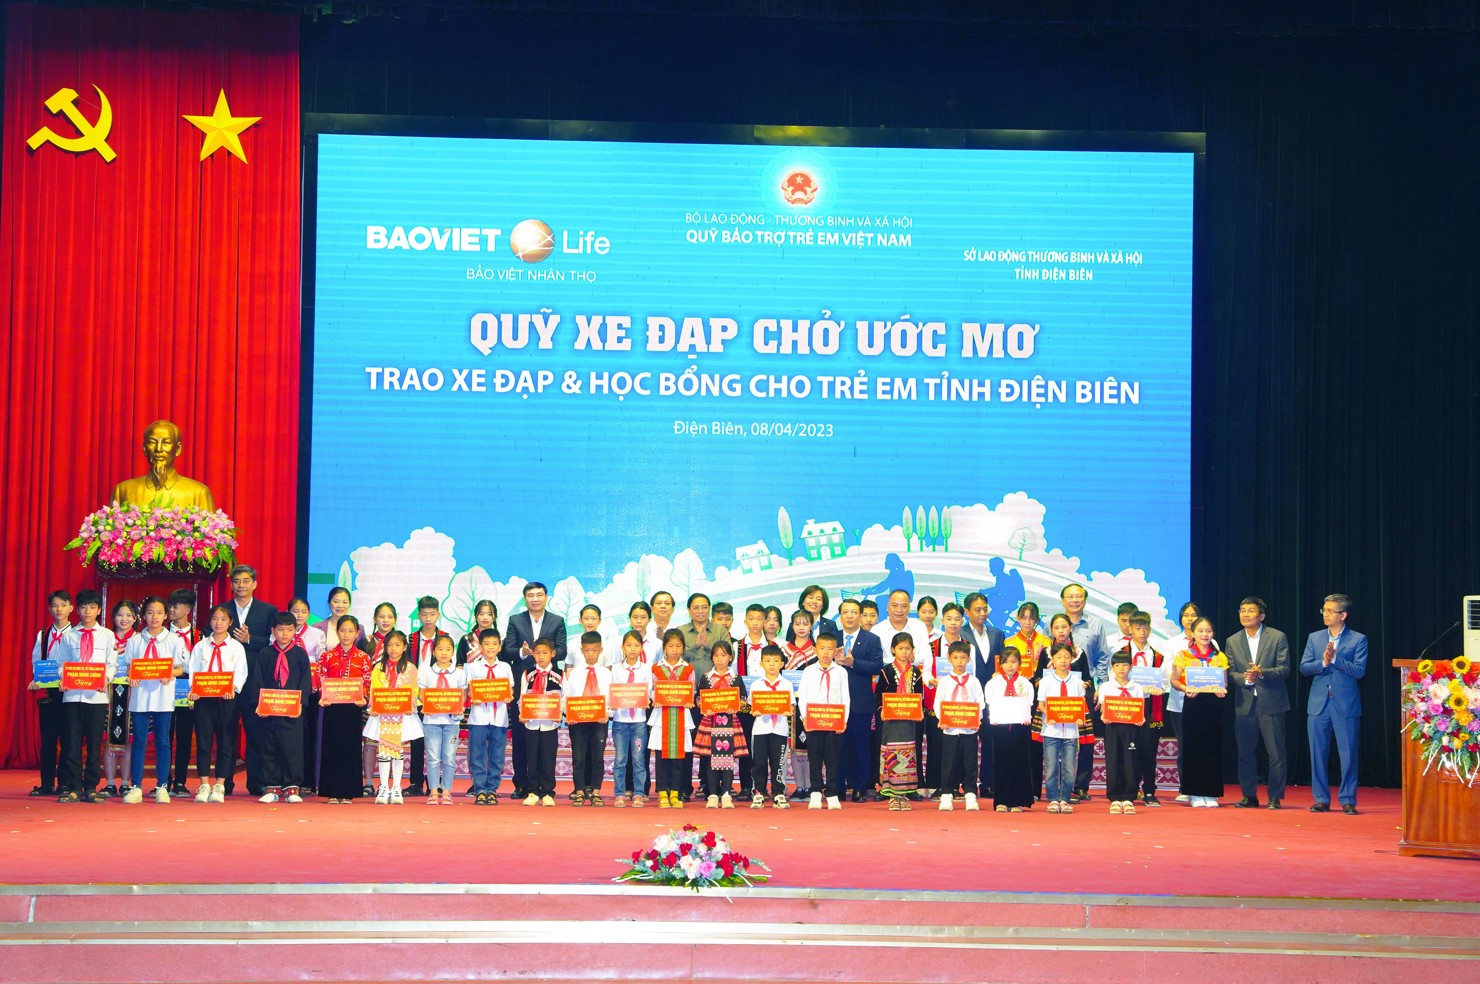 Đại diện 400 em học sinh nhận học bổng từ "Quỹ xe đạp chở ước mơ" của Bảo Việt Nhân thọ vinh dự chụp hình cùng Thủ tướng Phạm Minh Chính